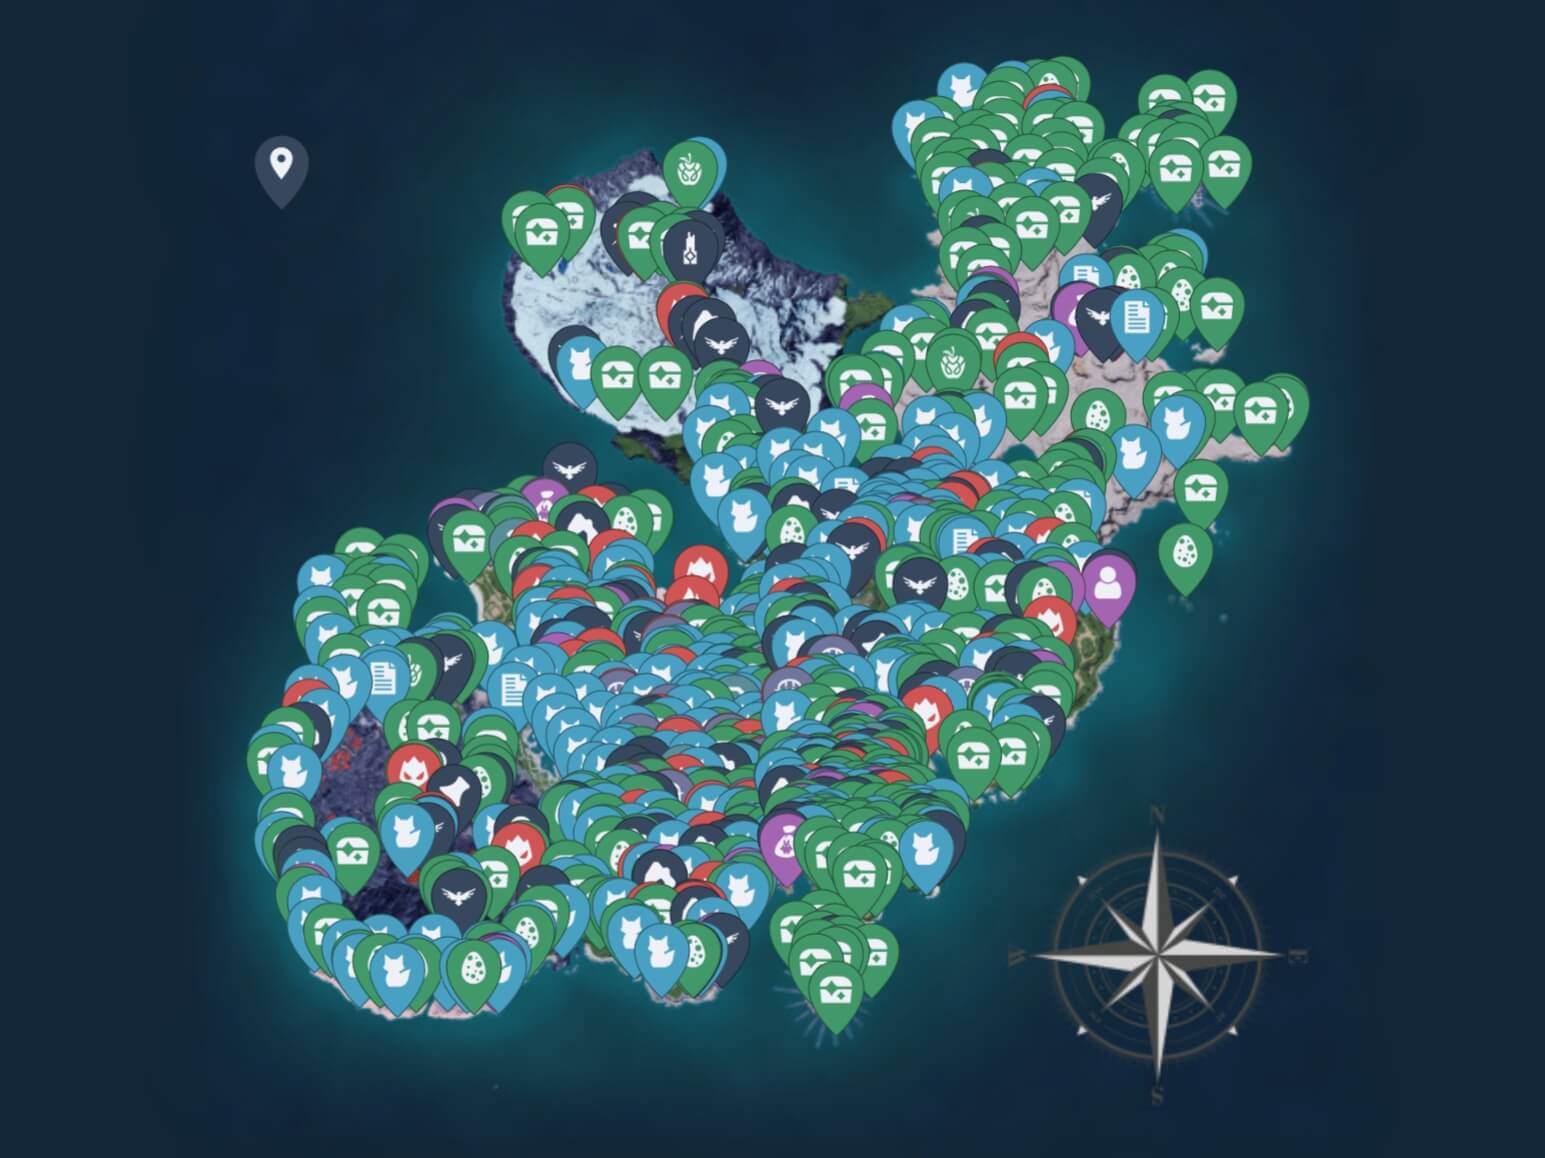 팰월드 맵 지도 웨이포인트 필드보스 NPC 팰 던전 아이템 위치